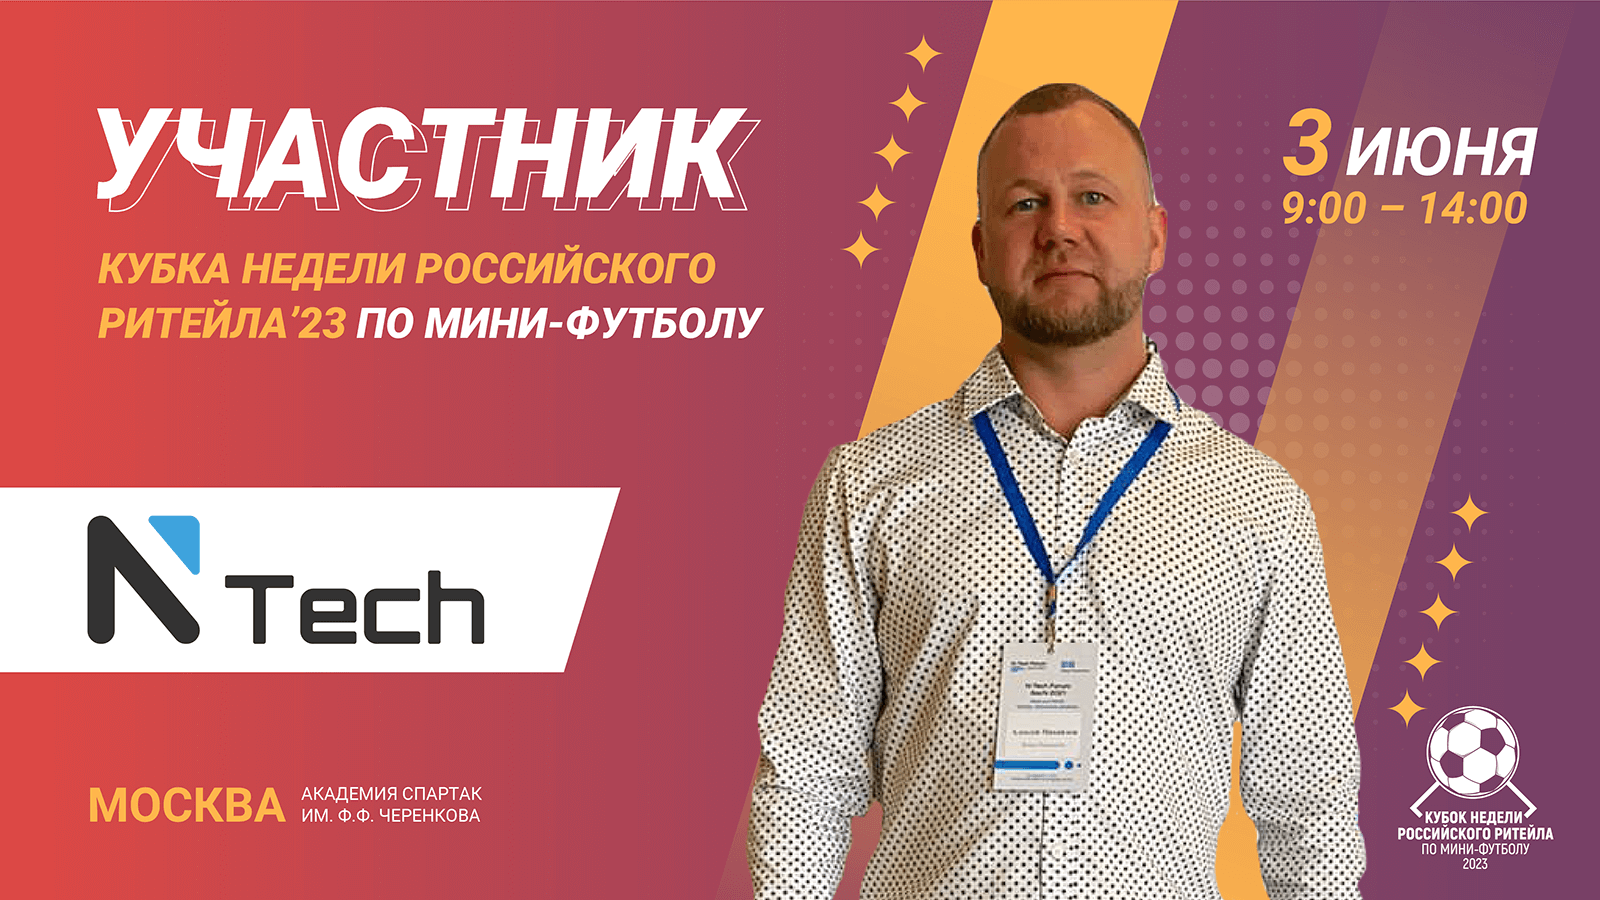 NTech - участник Кубка Недели Российского Ритейла 2023